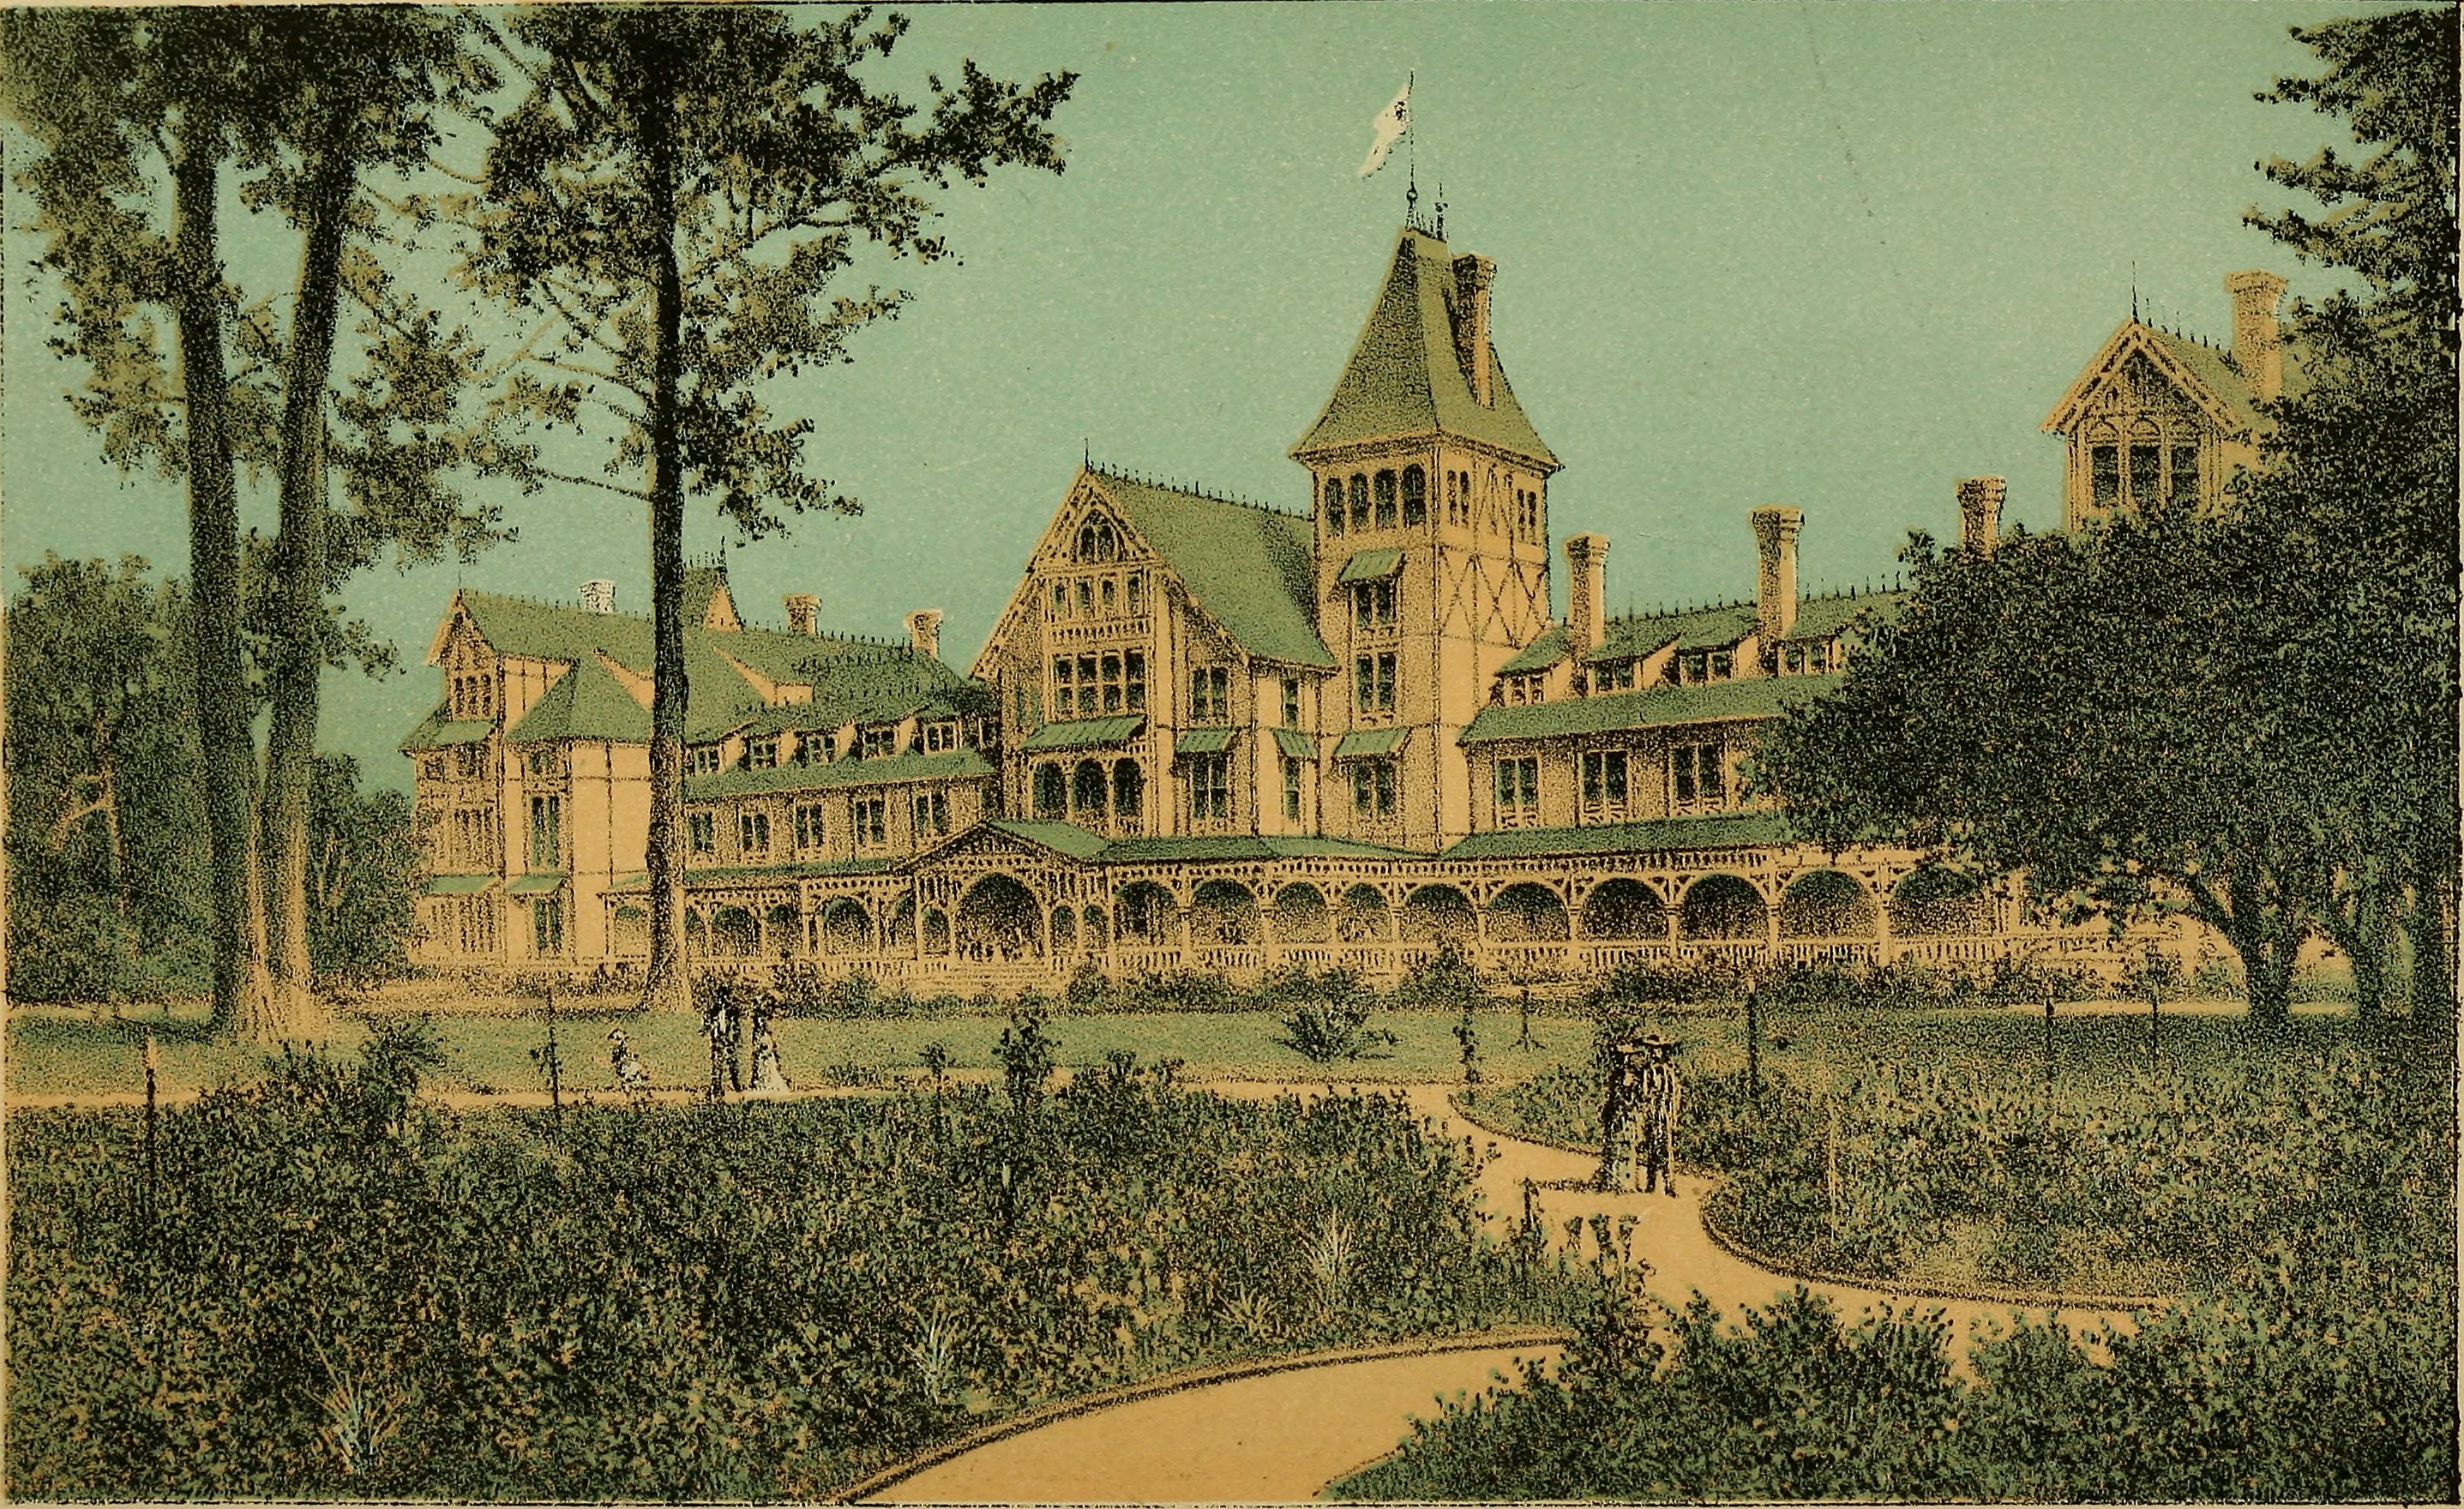 Del Monte Hotel in 1883 postcard